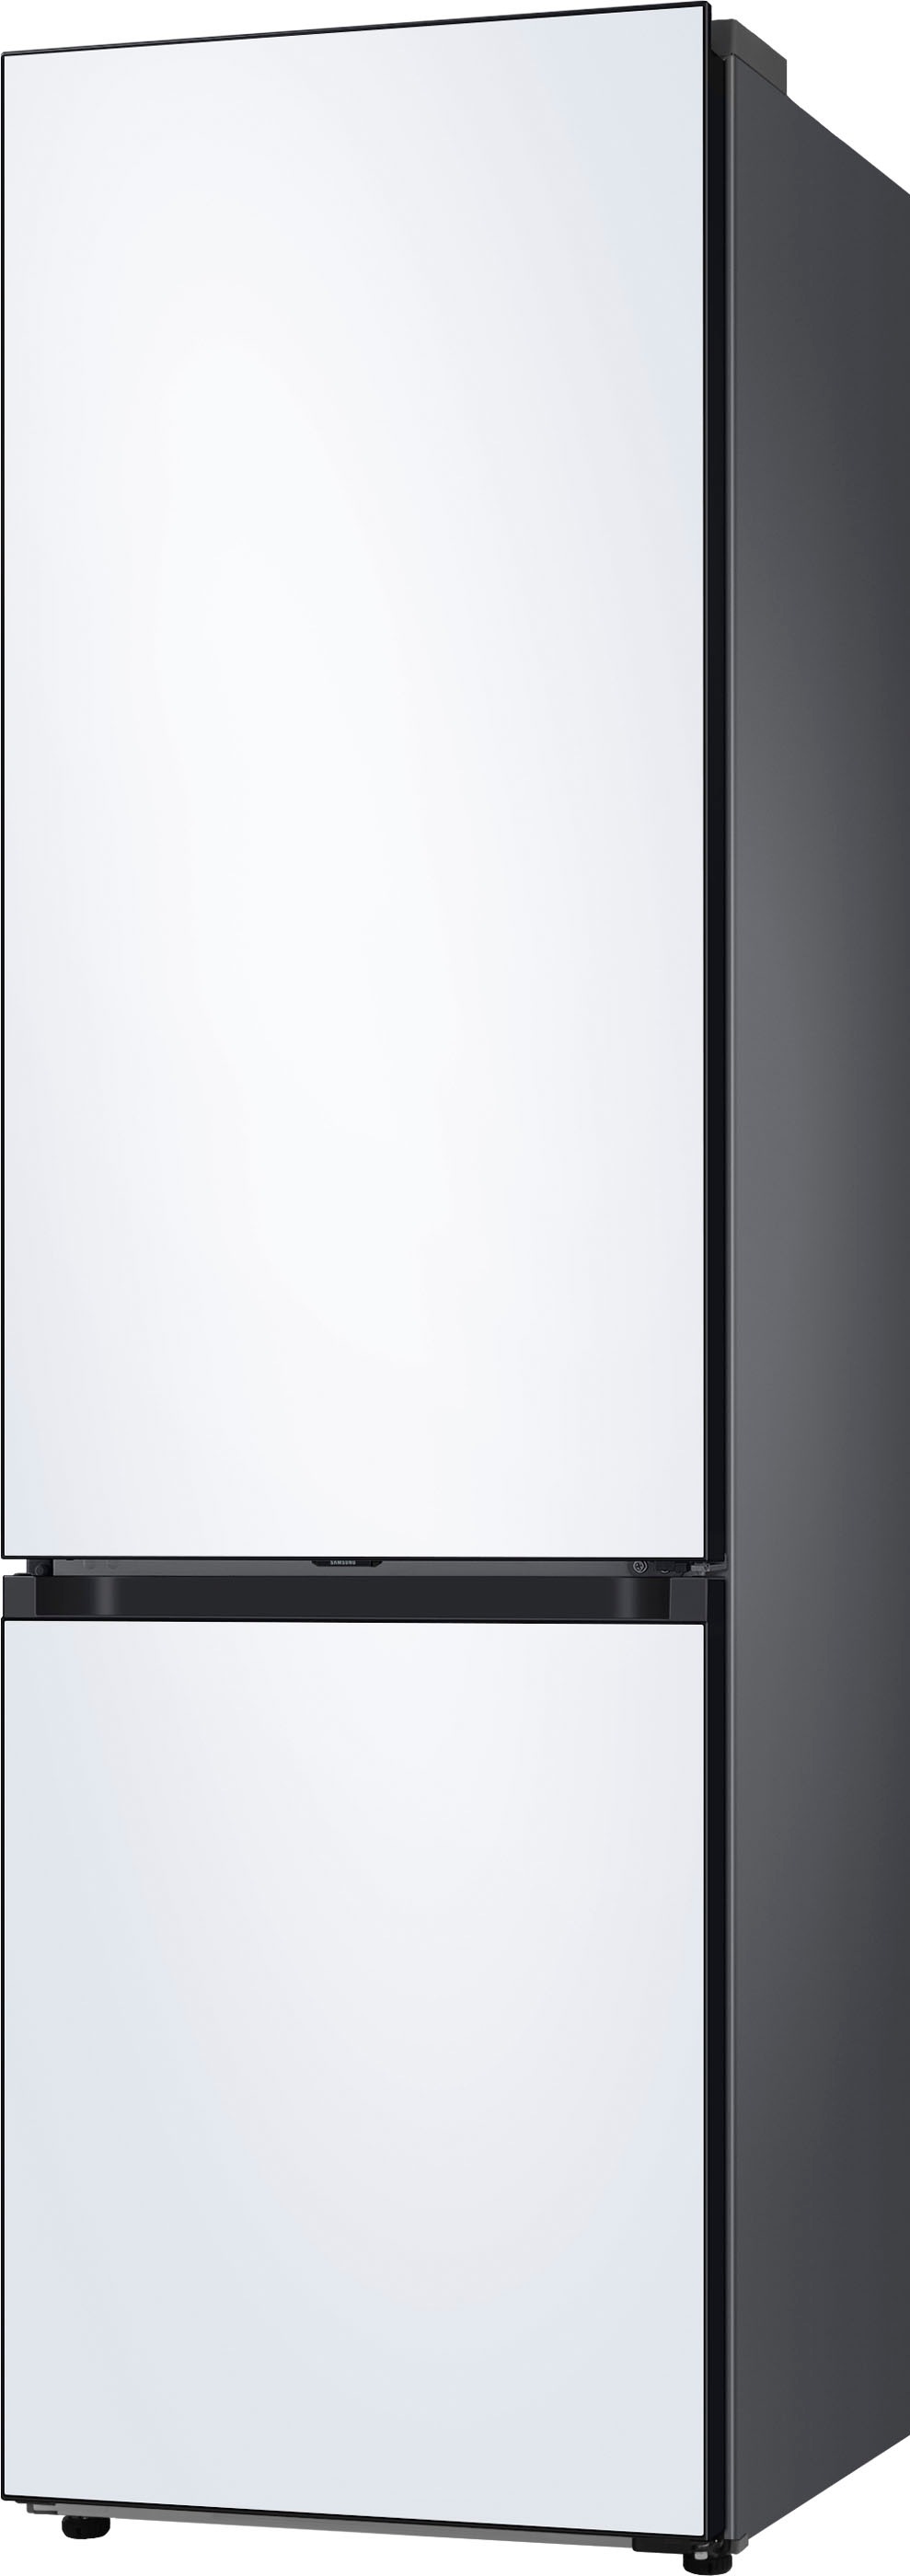 Samsung Kühl-/Gefrierkombination »RL38C6B0CWW«, RL38C6B0CWW, 203 cm hoch, 59,5 cm breit